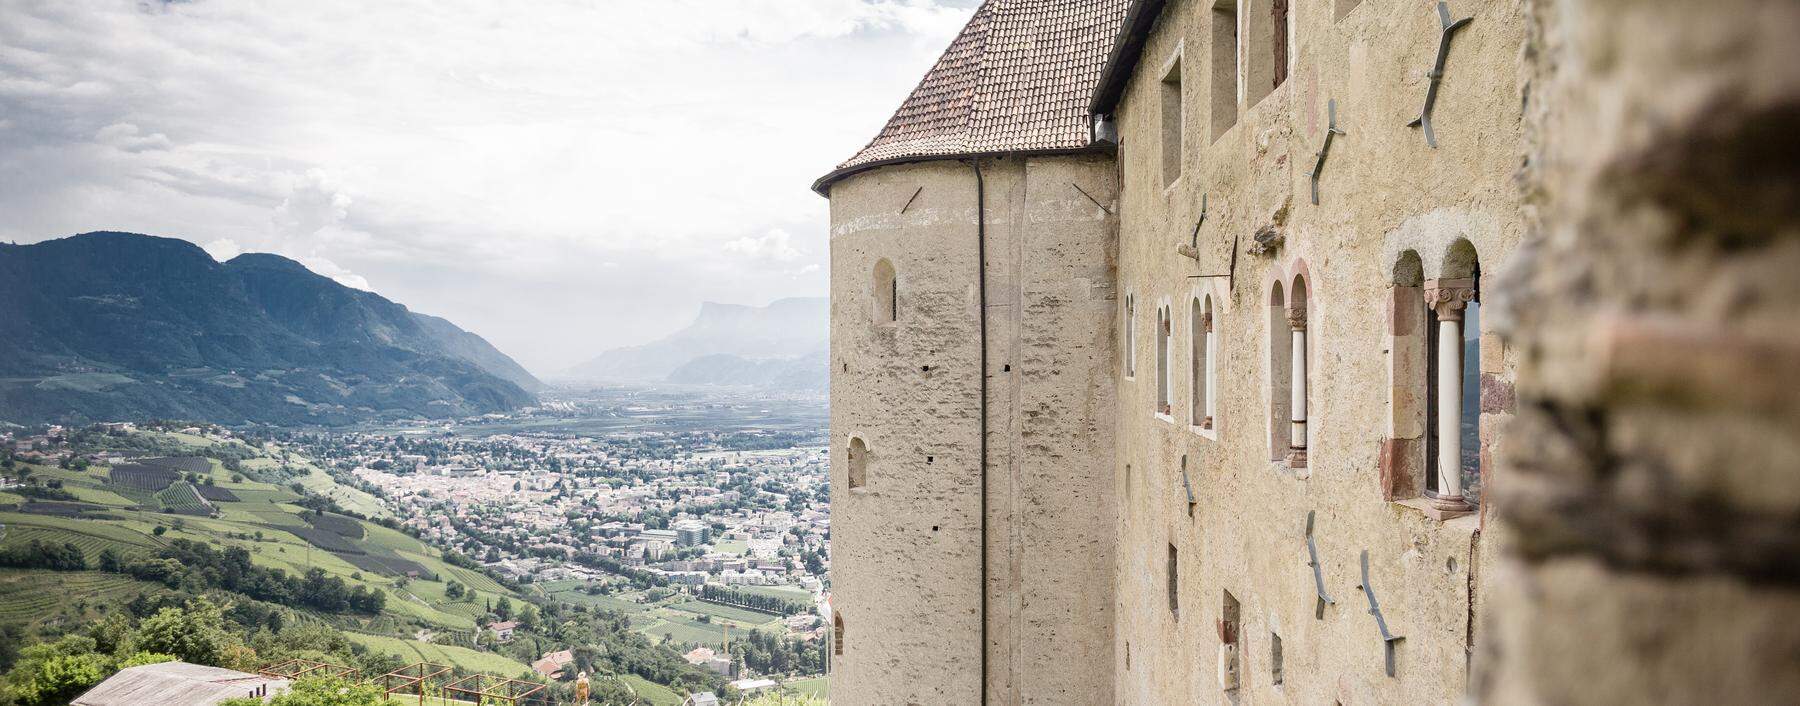 Das Schloss und Dorf, das dem Land seinen Namen gab: Tirol. Steht bei Meran. 